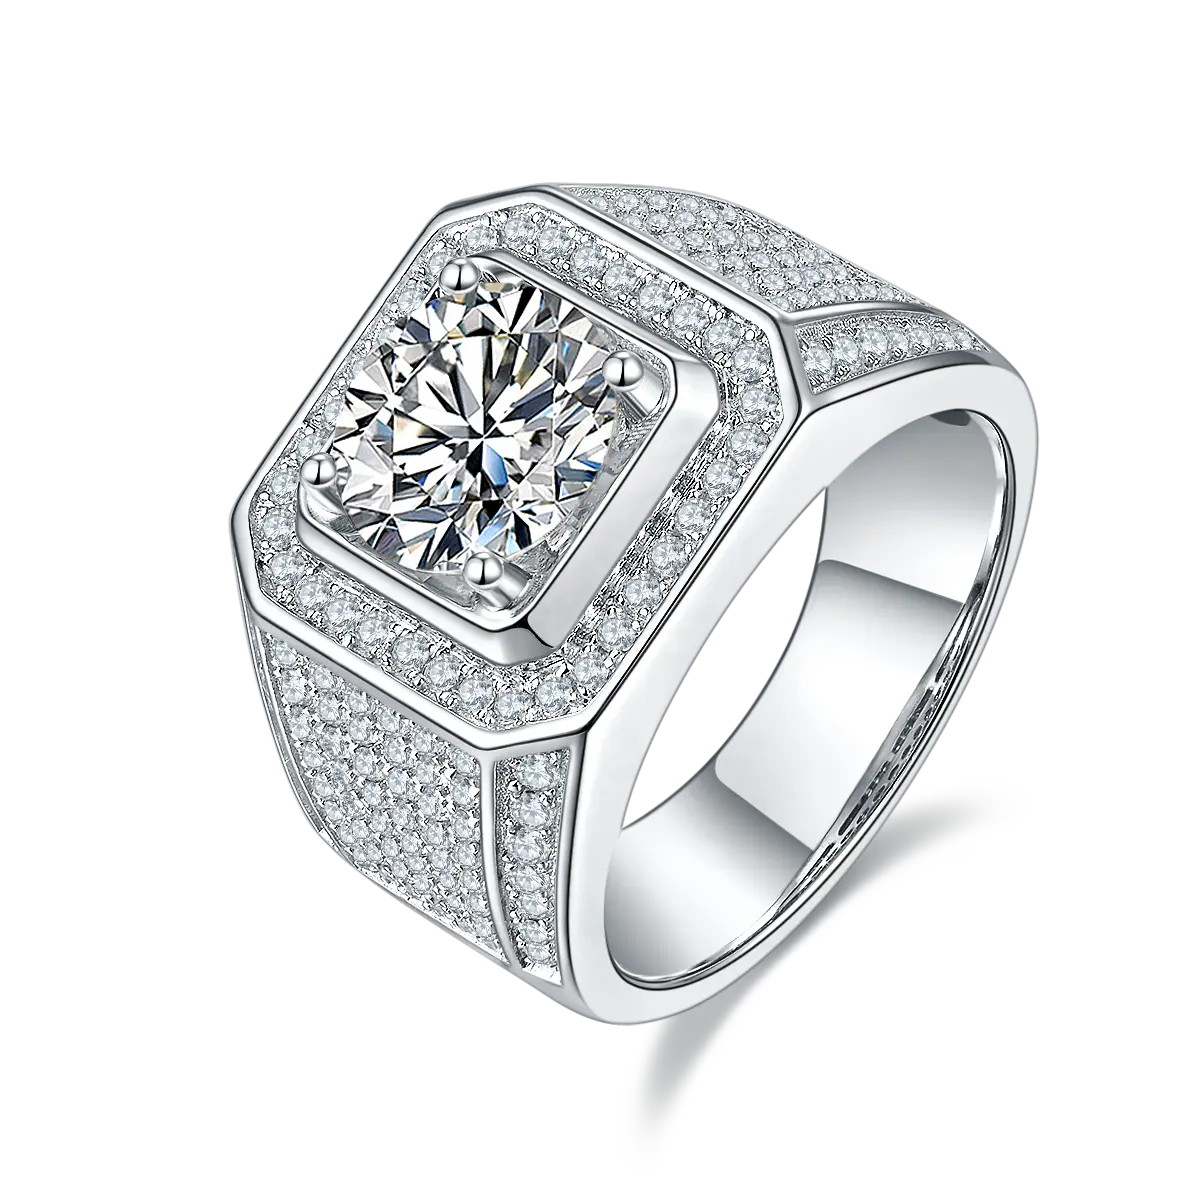 Hanyu 3 ct d vs צבע סביב טבעת חיתוך מבריק עבור גברים תכשיטים יוקרתיים 925 טבעת מויסניט כסף סטרלינג